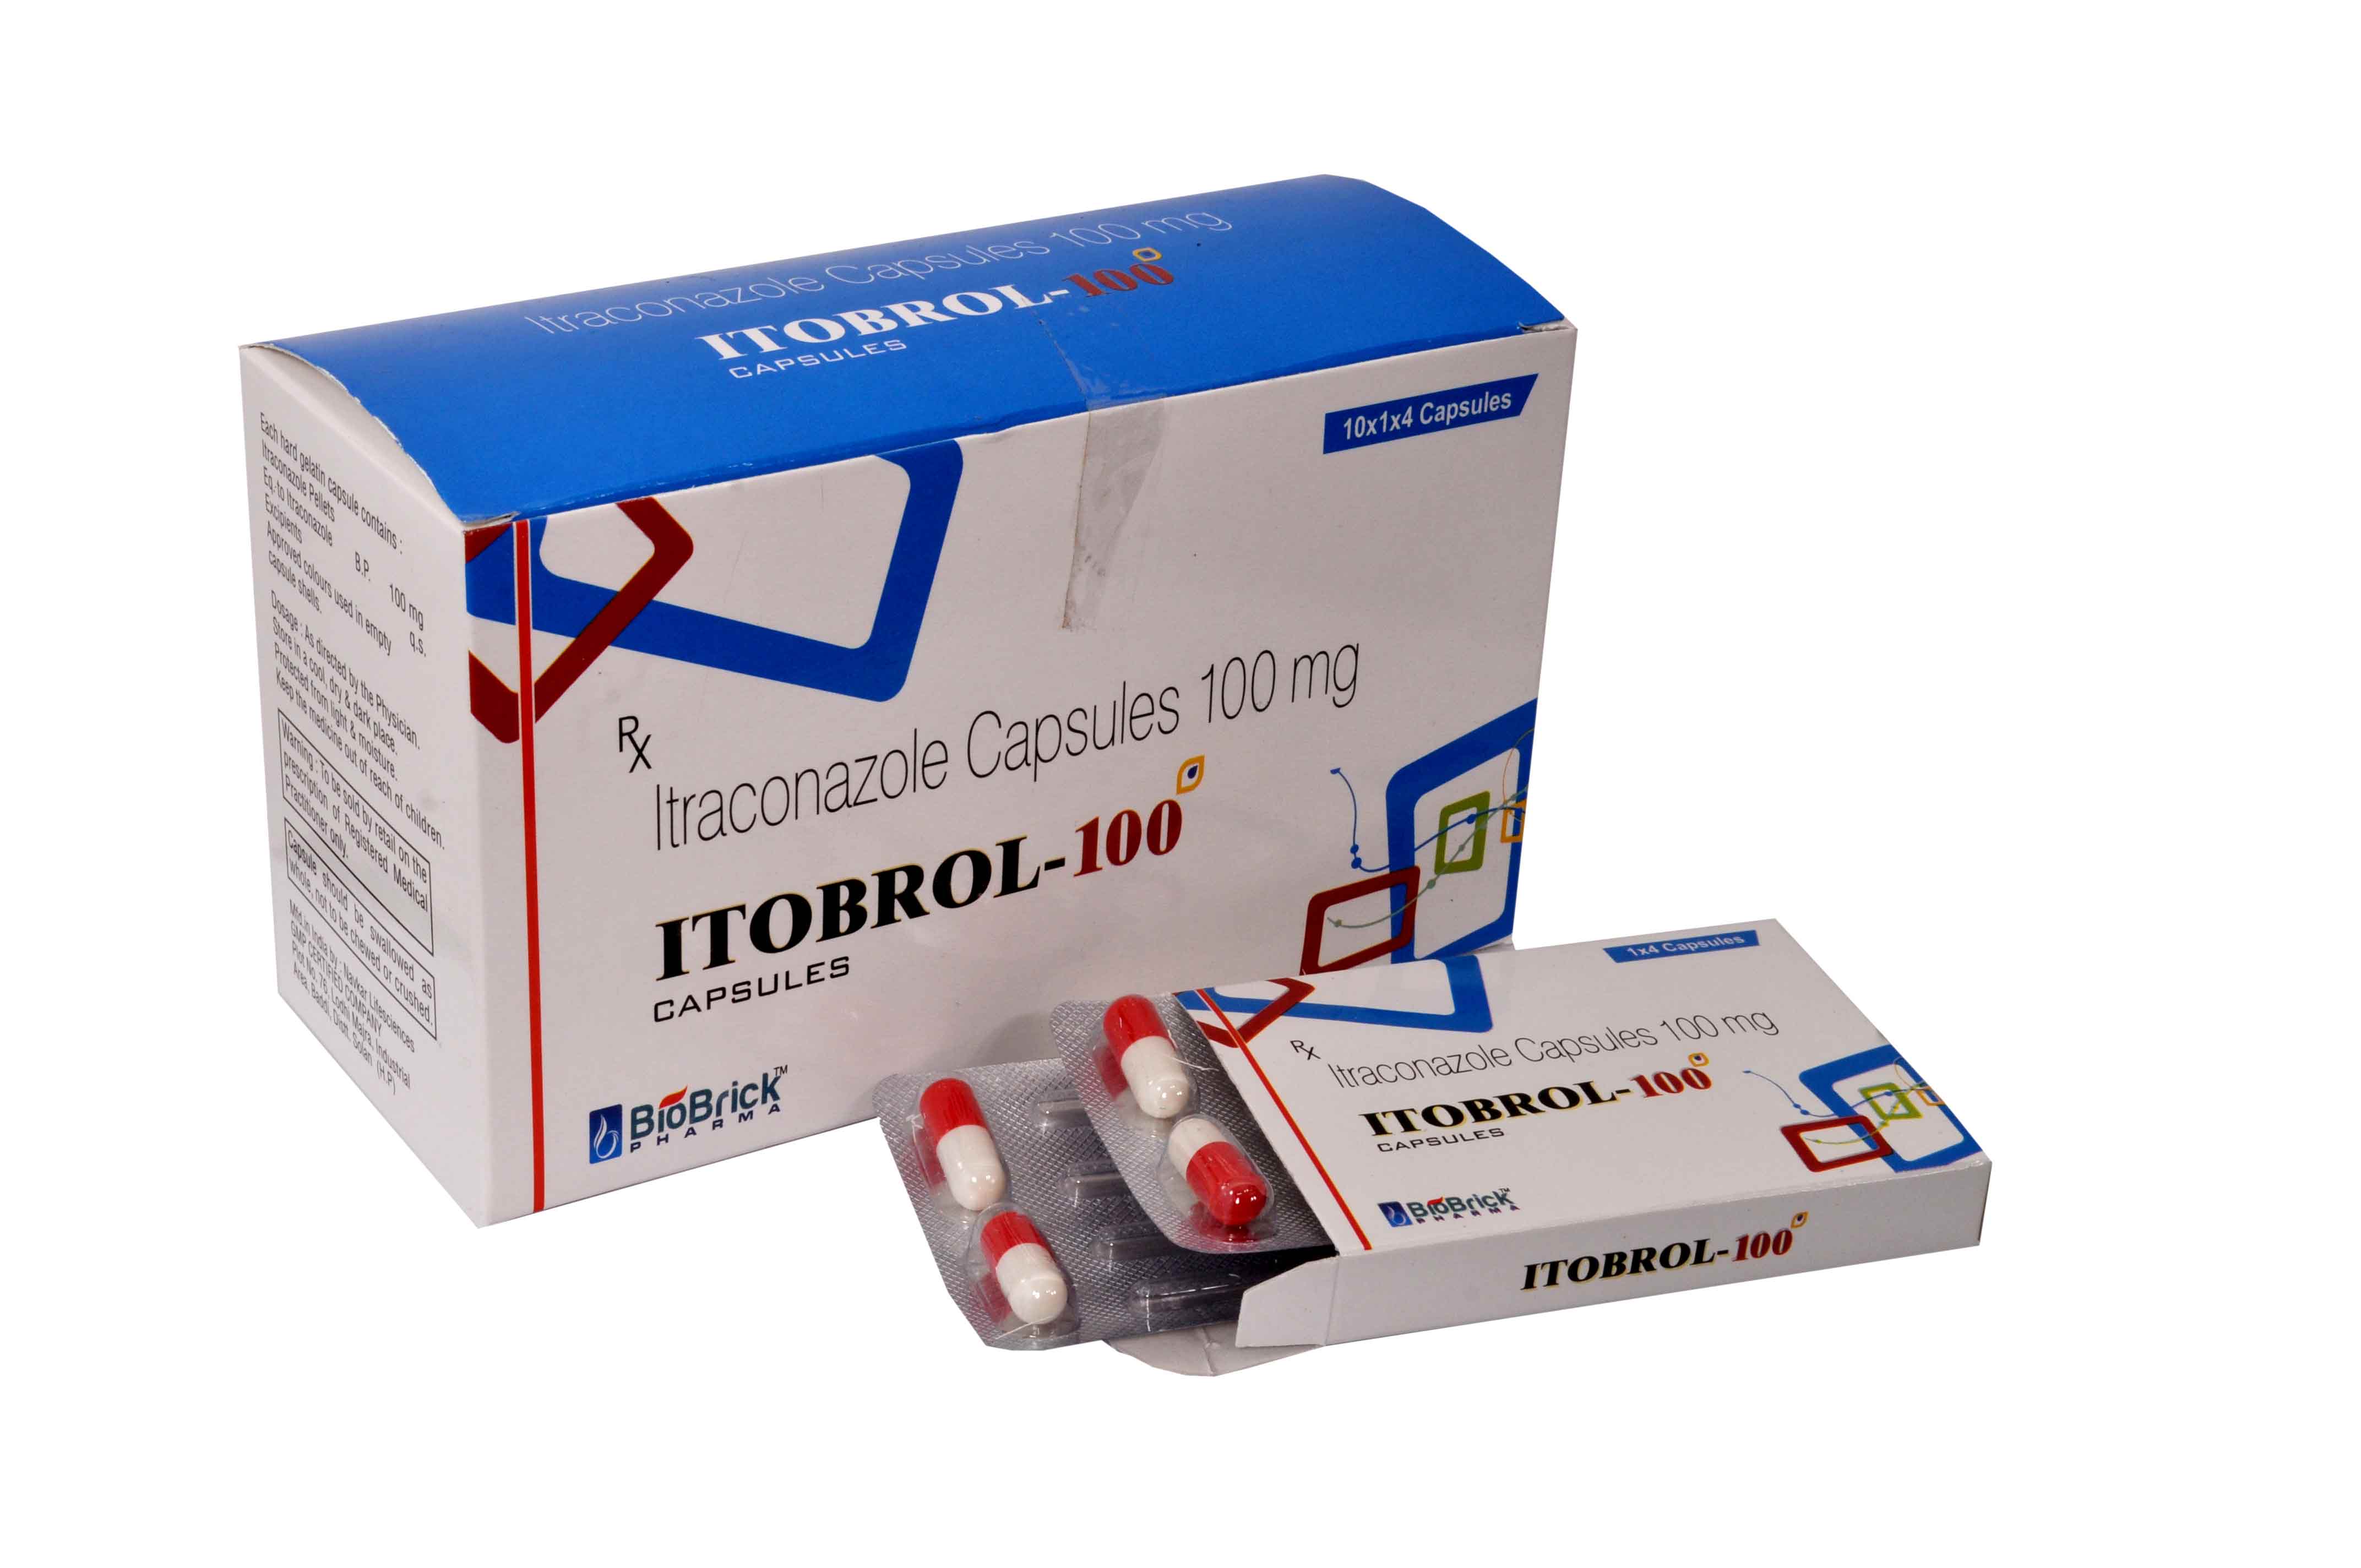 ITOBROL-100